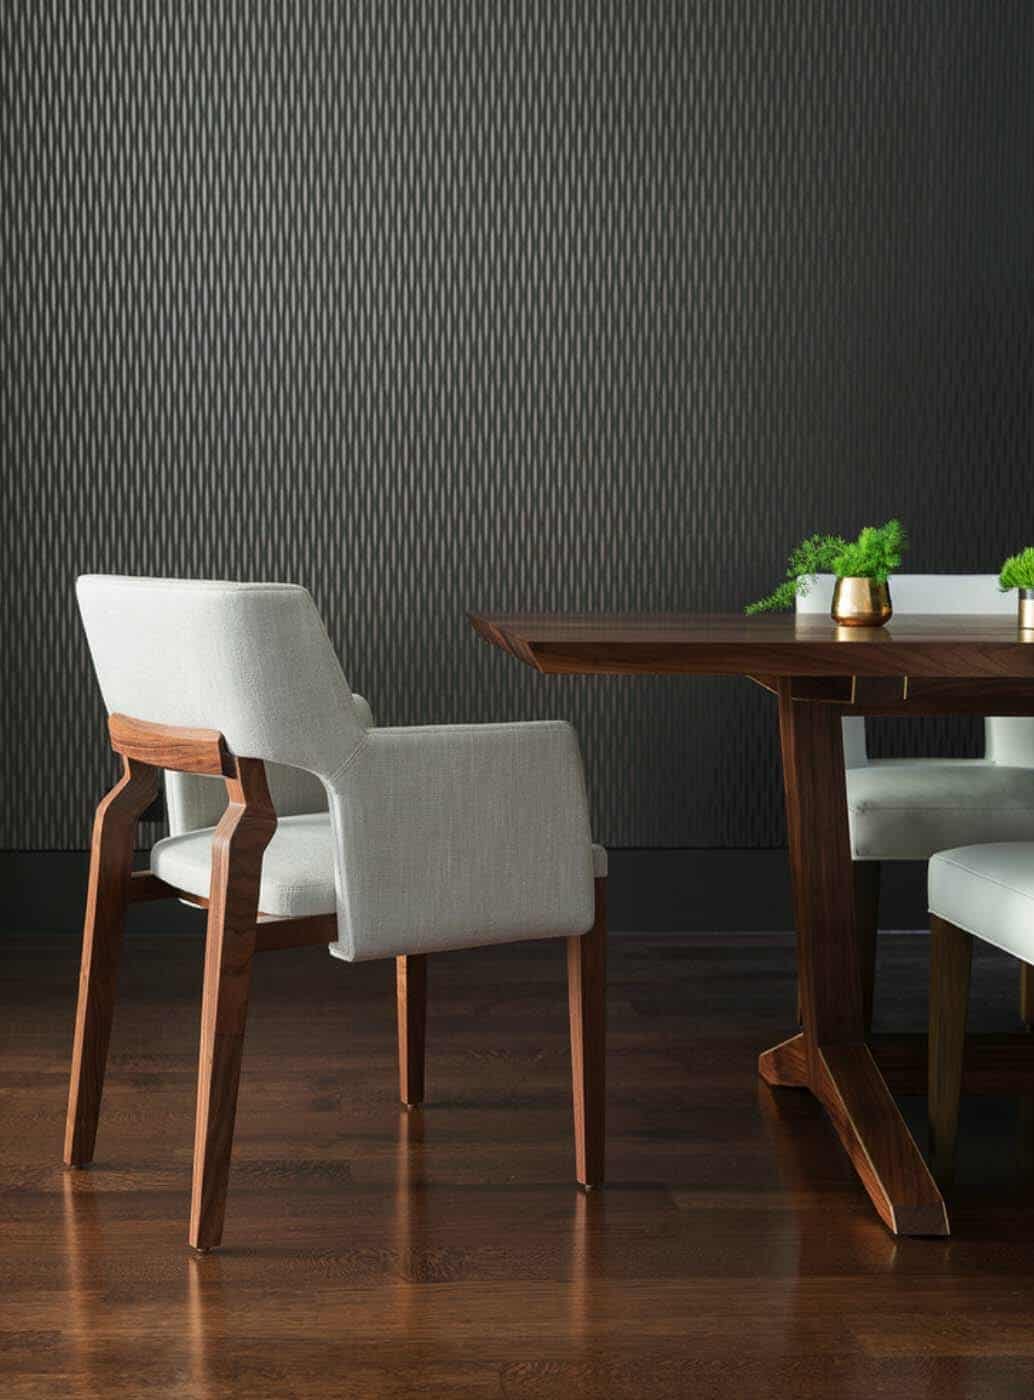 Contemporary Home Design-Dining Room